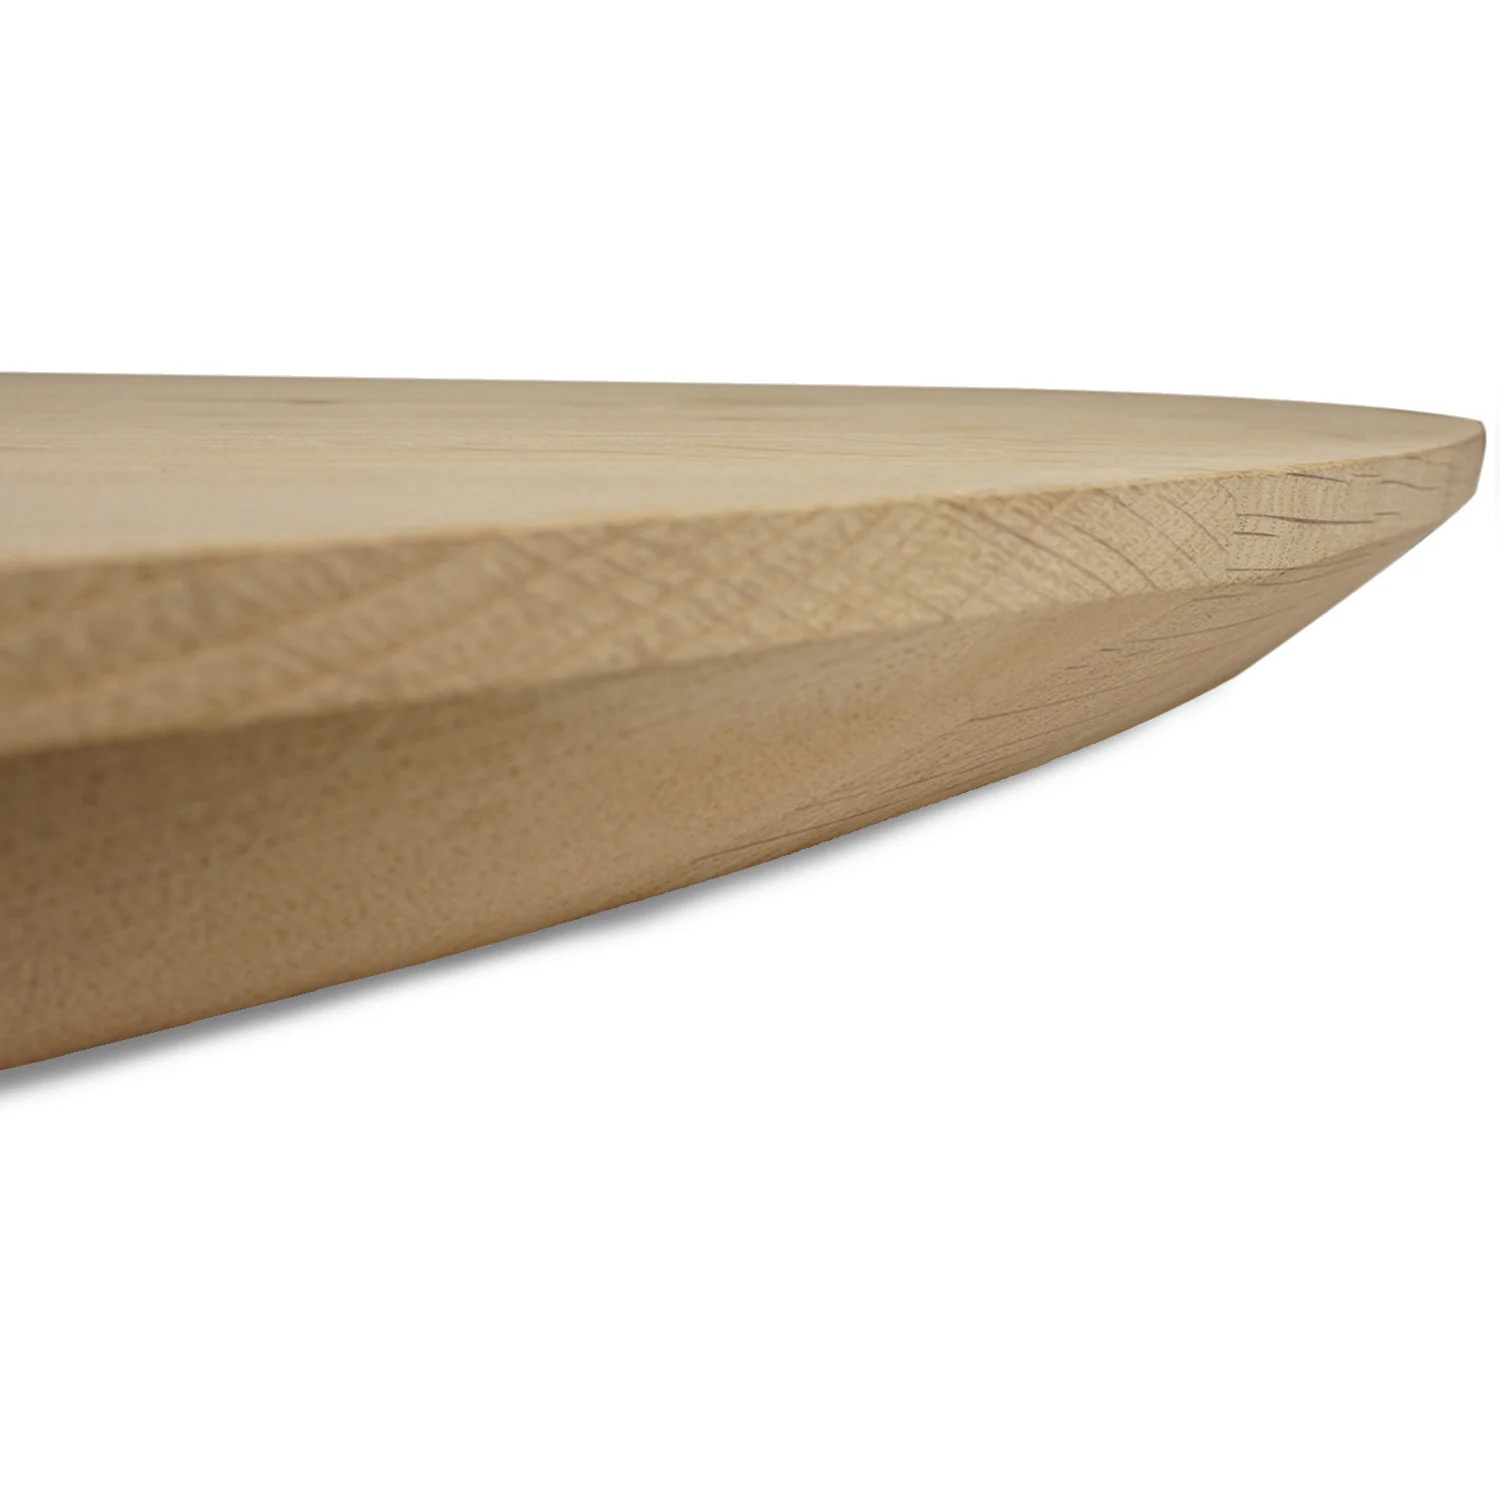  Tischplatte Eiche rund nach Maß - 2,5 cm dick - Eichenholz A-Qualität - Durchmesser: 30 - 180 cm - Eiche Tischplatte rund massiv - verleimt & künstlich getrocknet (HF 8-12%)